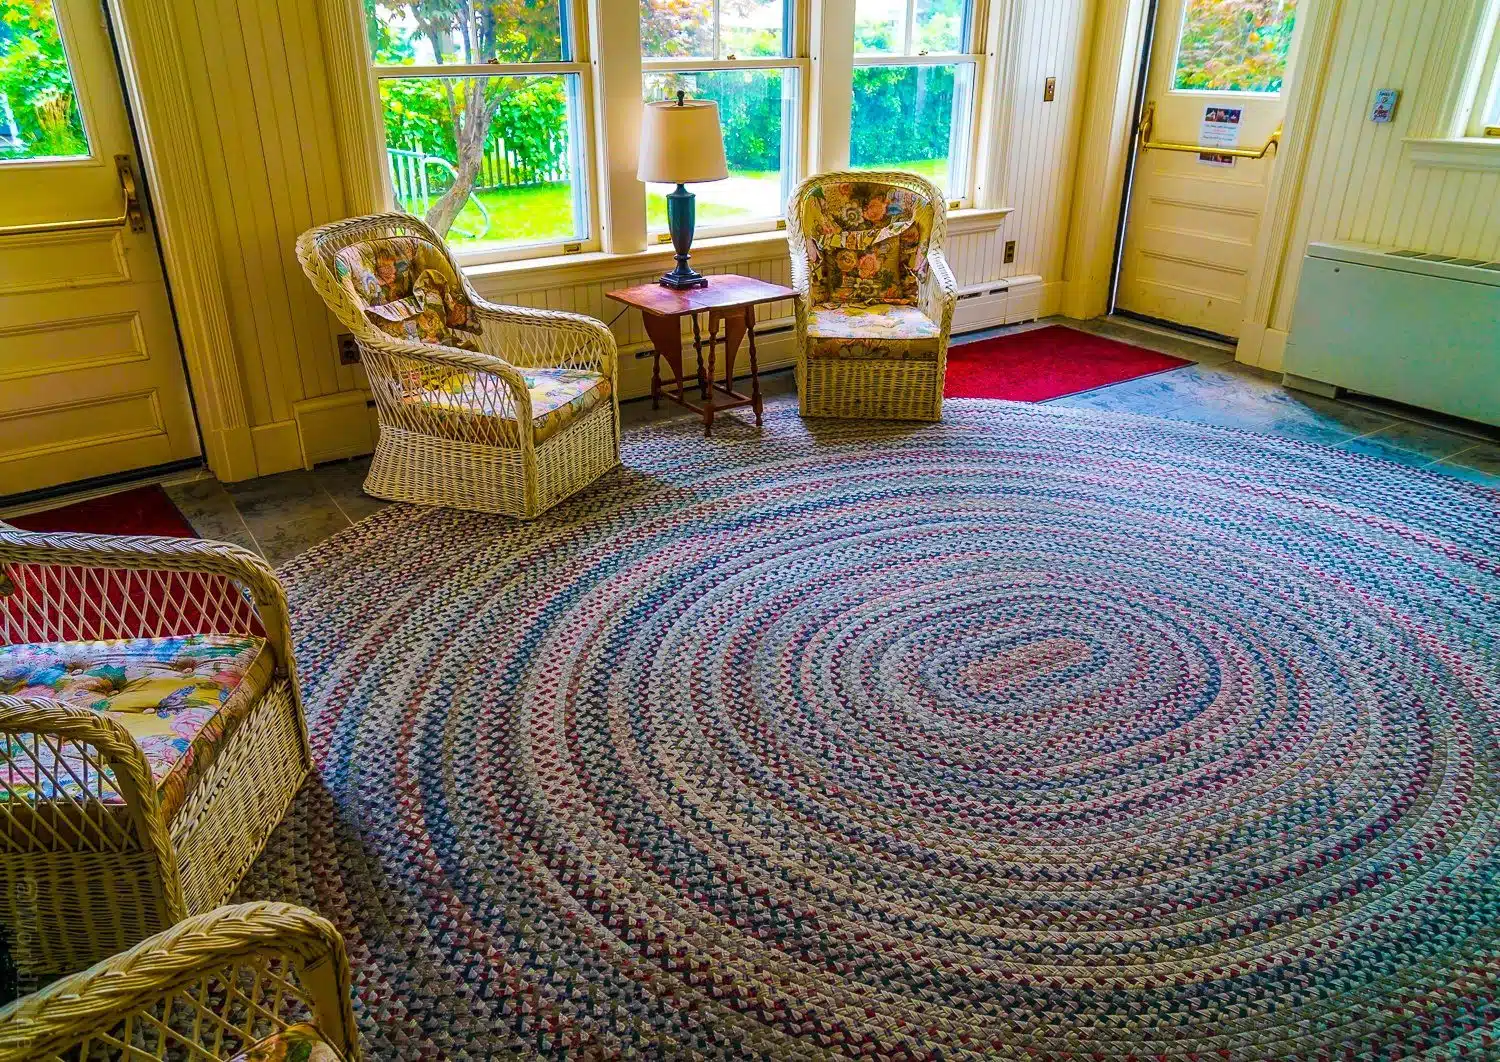 Giant circular braided coil rug in Red Lion Inn entryway, Stockbridge, Massachusetts.